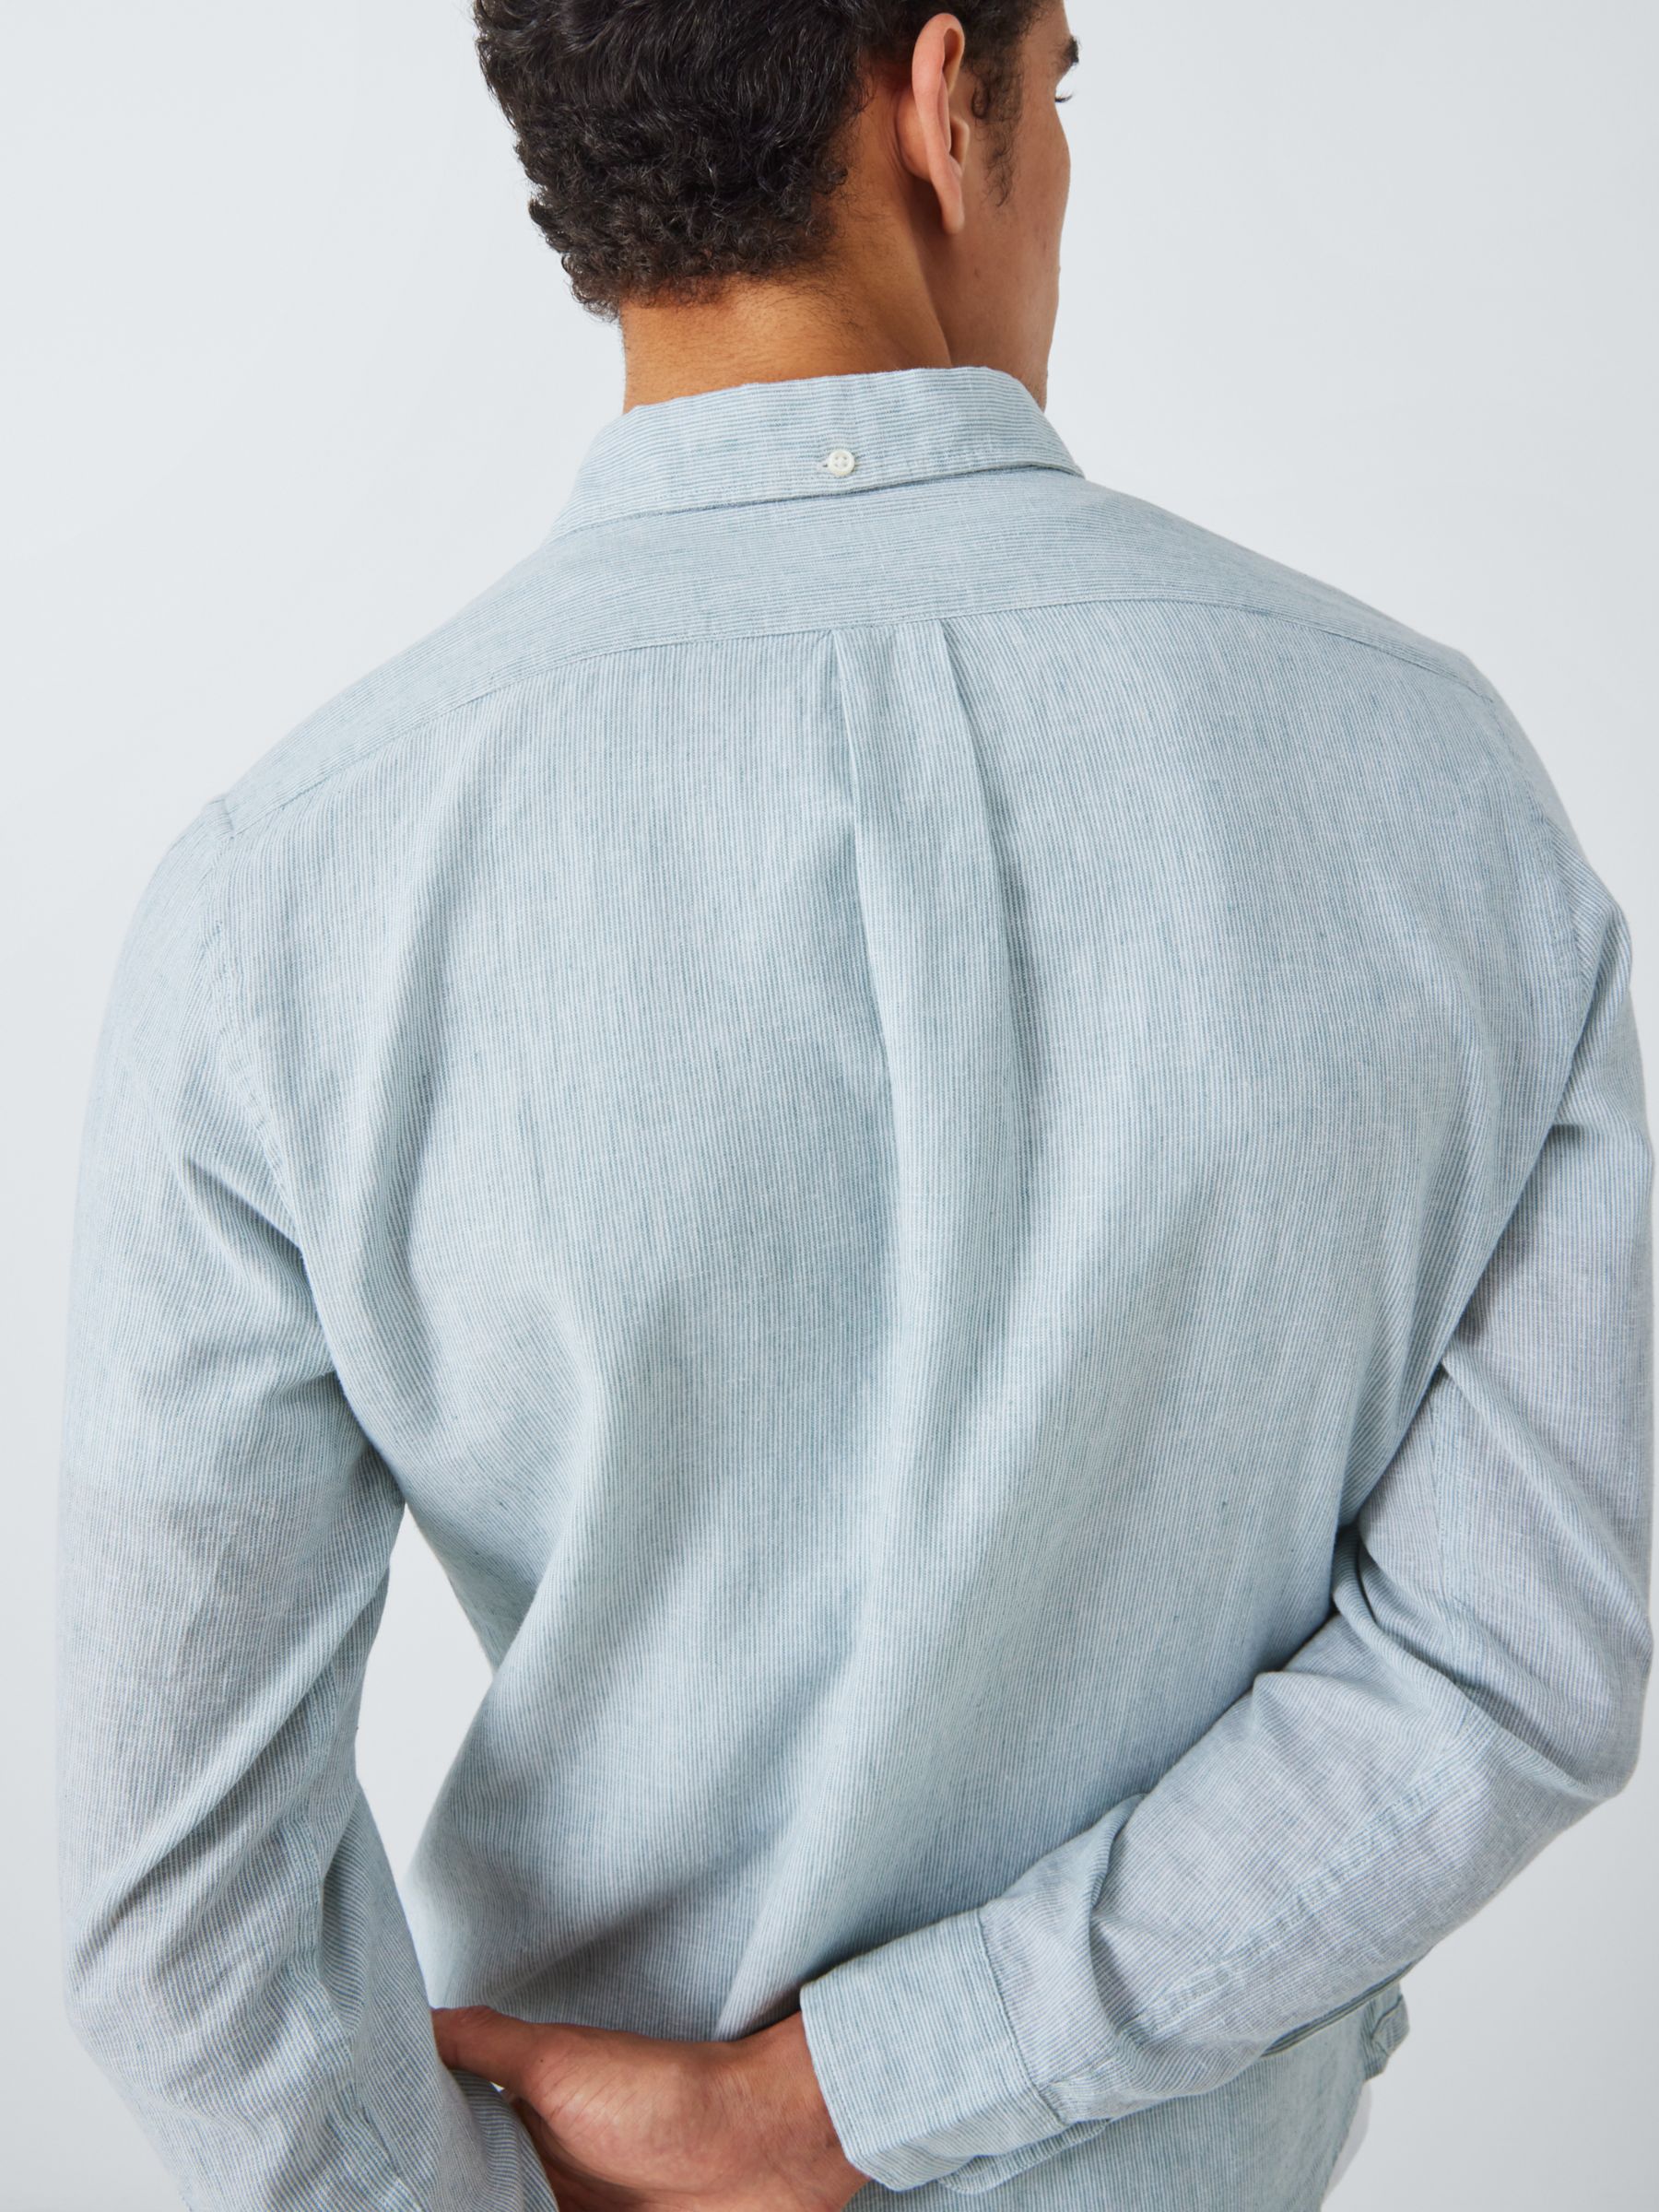 John Lewis Linen Blend Micro Stripe Long Sleeve Shirt, Green, S